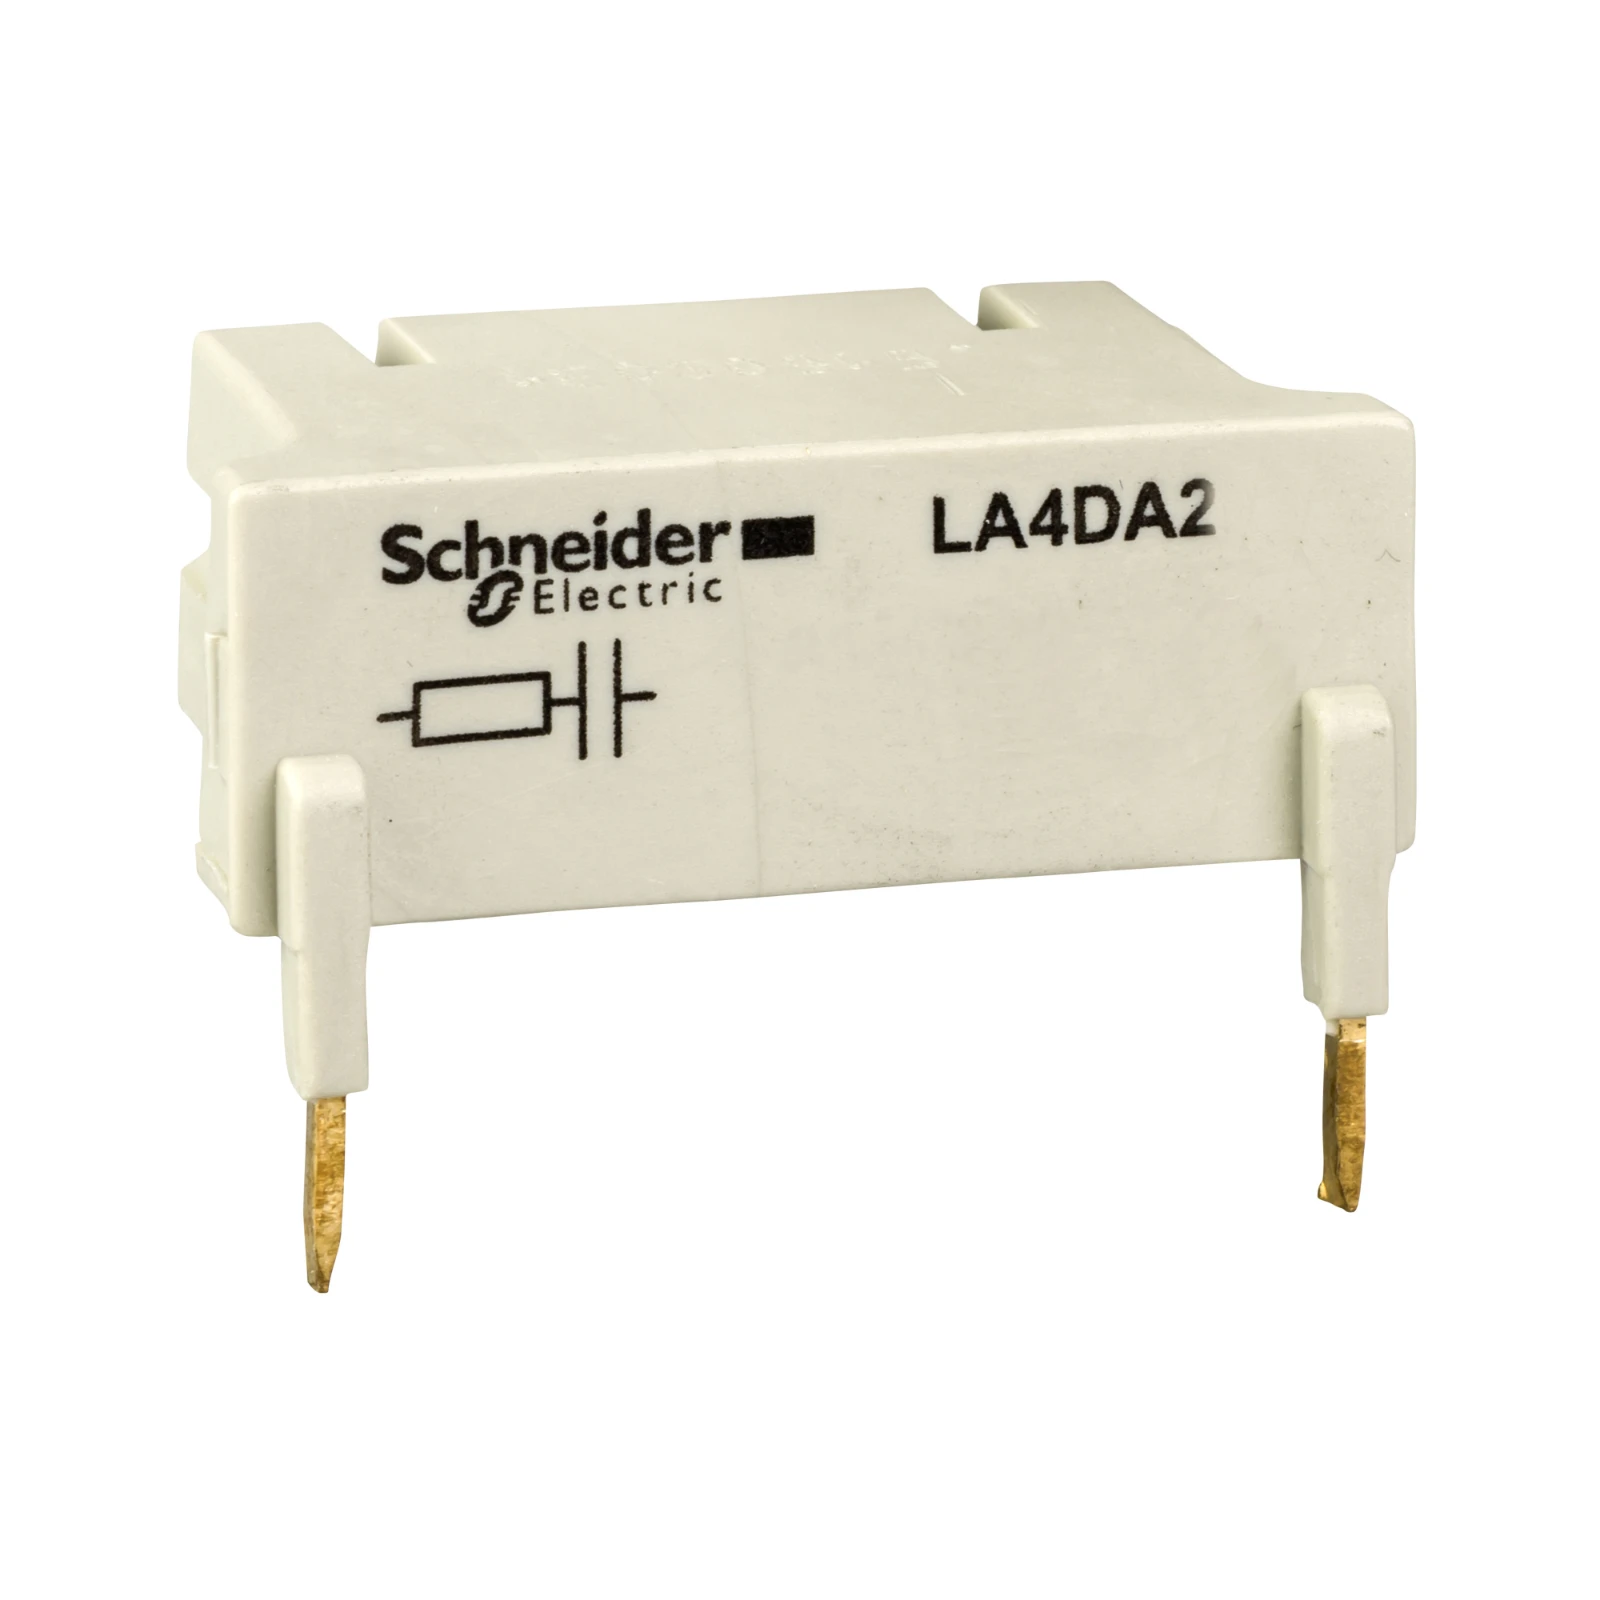 1041844 - Schneider Electric LA4DA2U